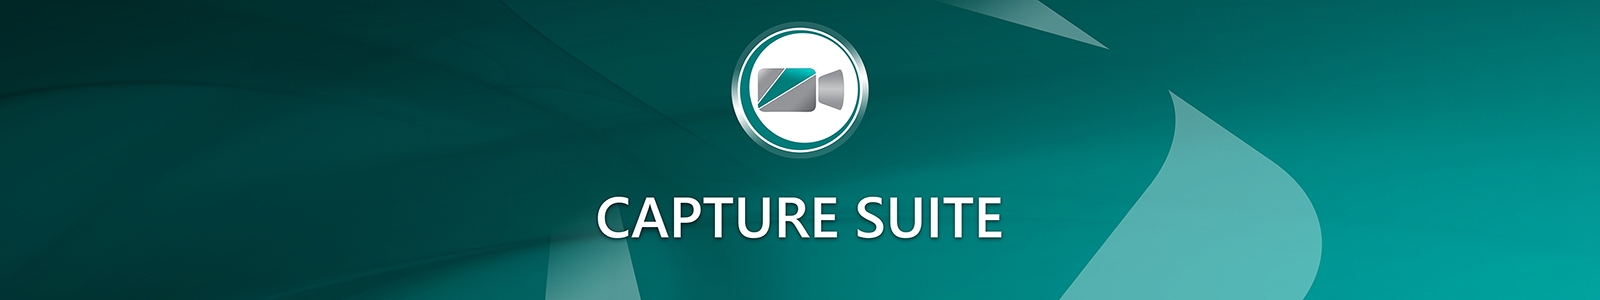 Capture Suite logo